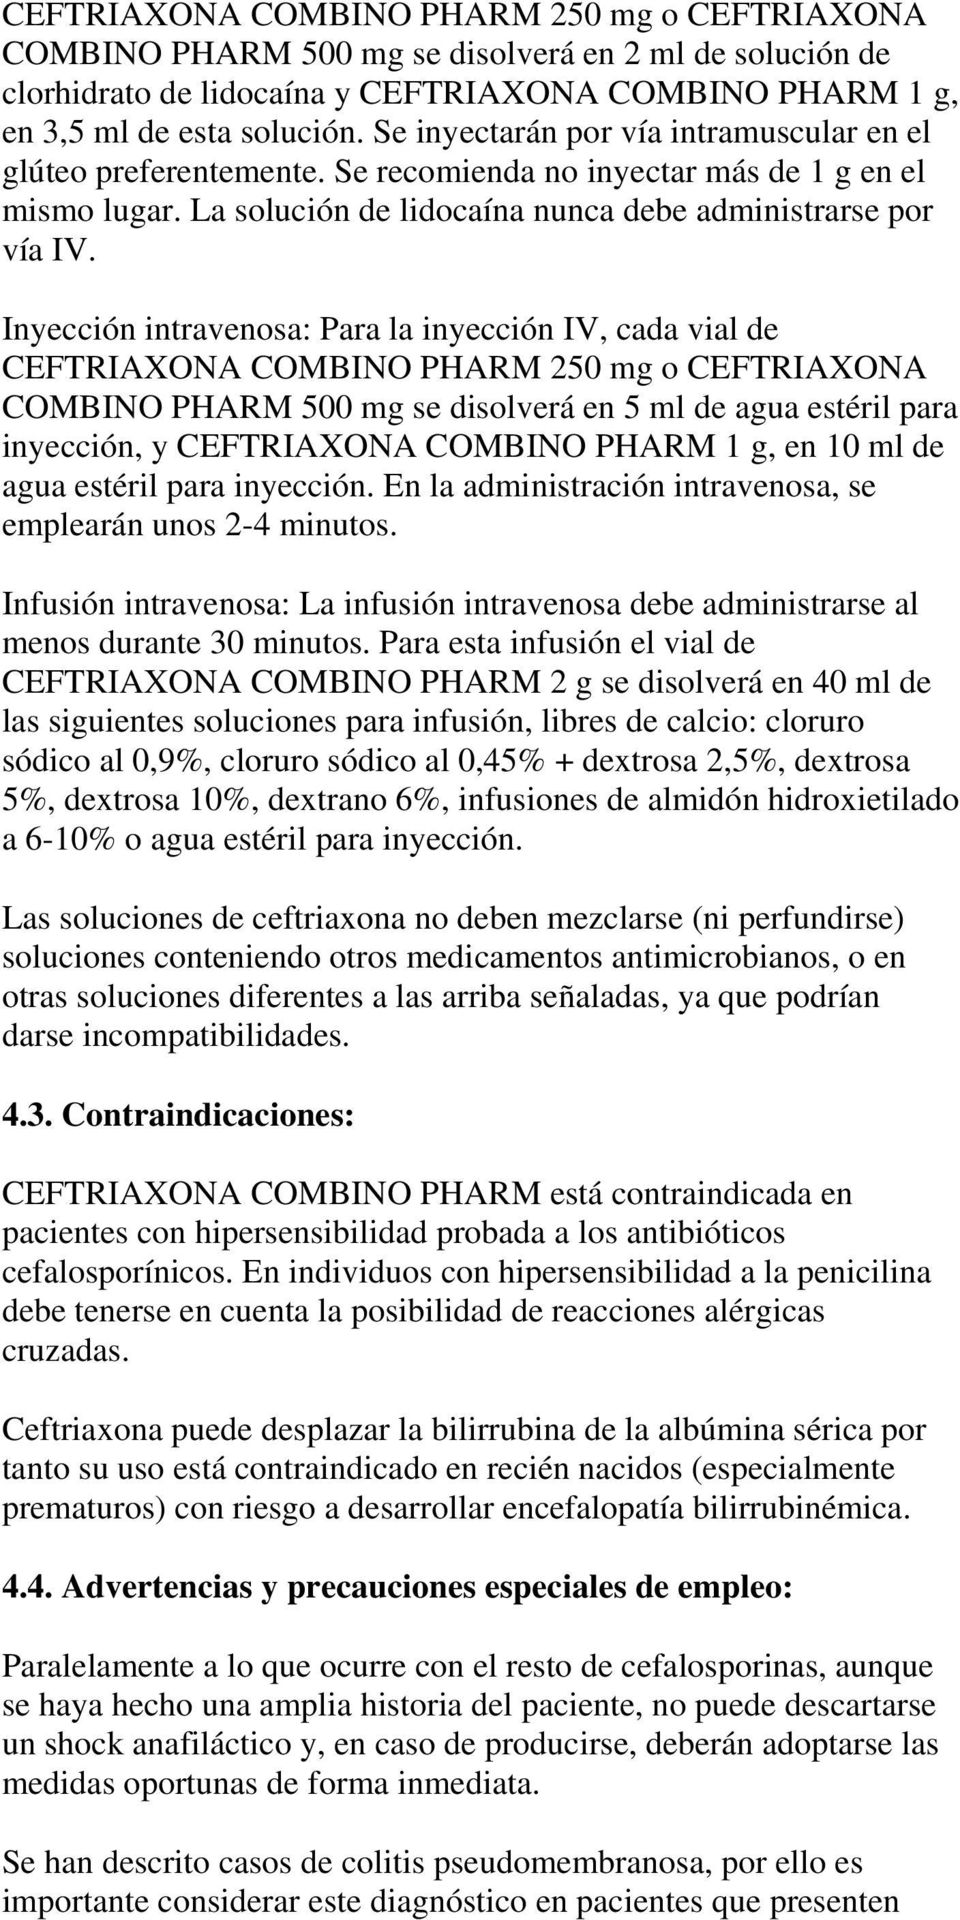 Inyección intravenosa: Para la inyección IV, cada vial de CEFTRIAXONA COMBINO PHARM 250 mg o CEFTRIAXONA COMBINO PHARM 500 mg se disolverá en 5 ml de agua estéril para inyección, y CEFTRIAXONA